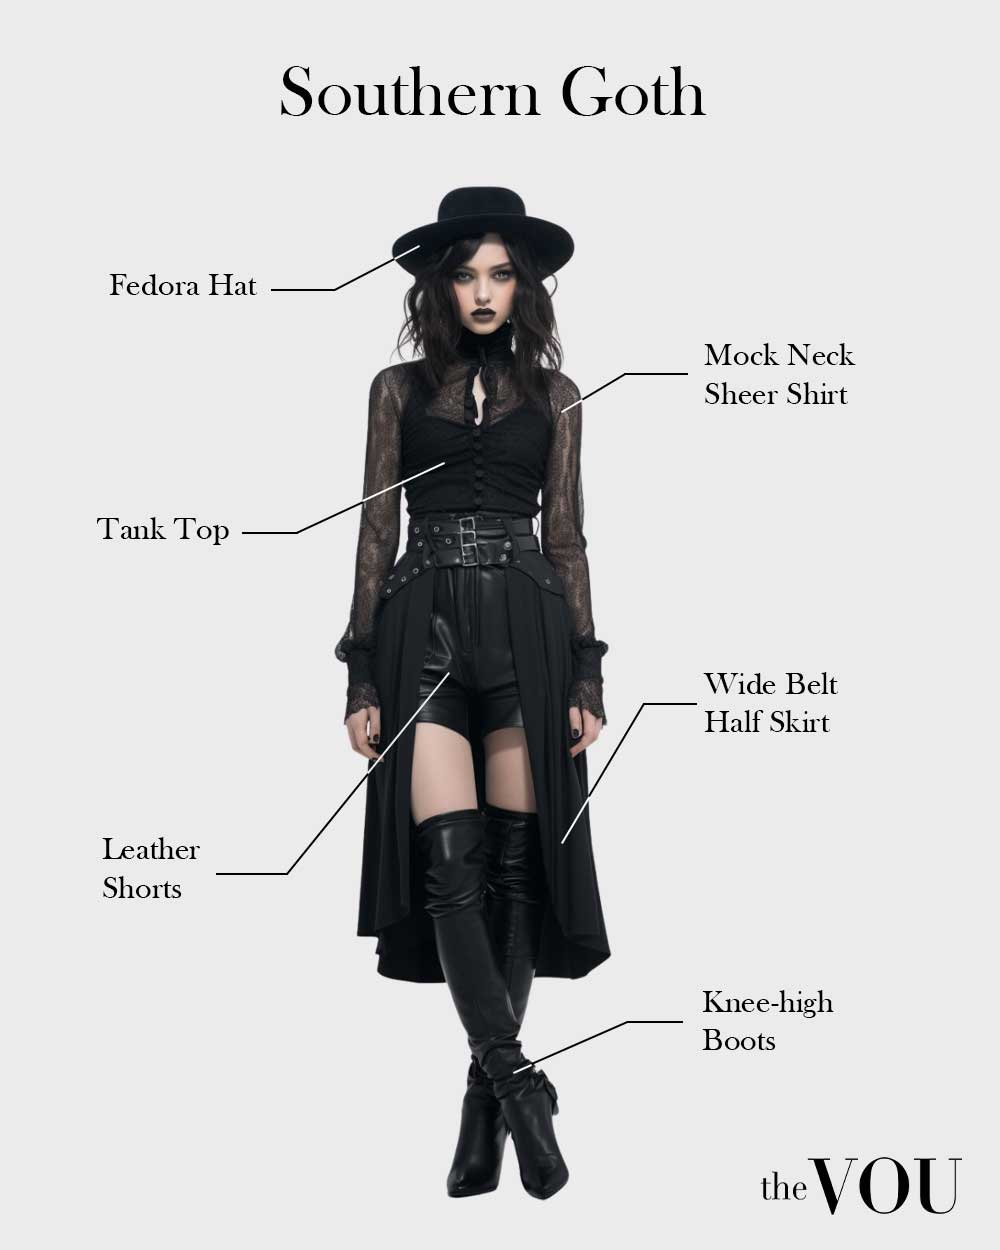 Female Southern Goth fashion style